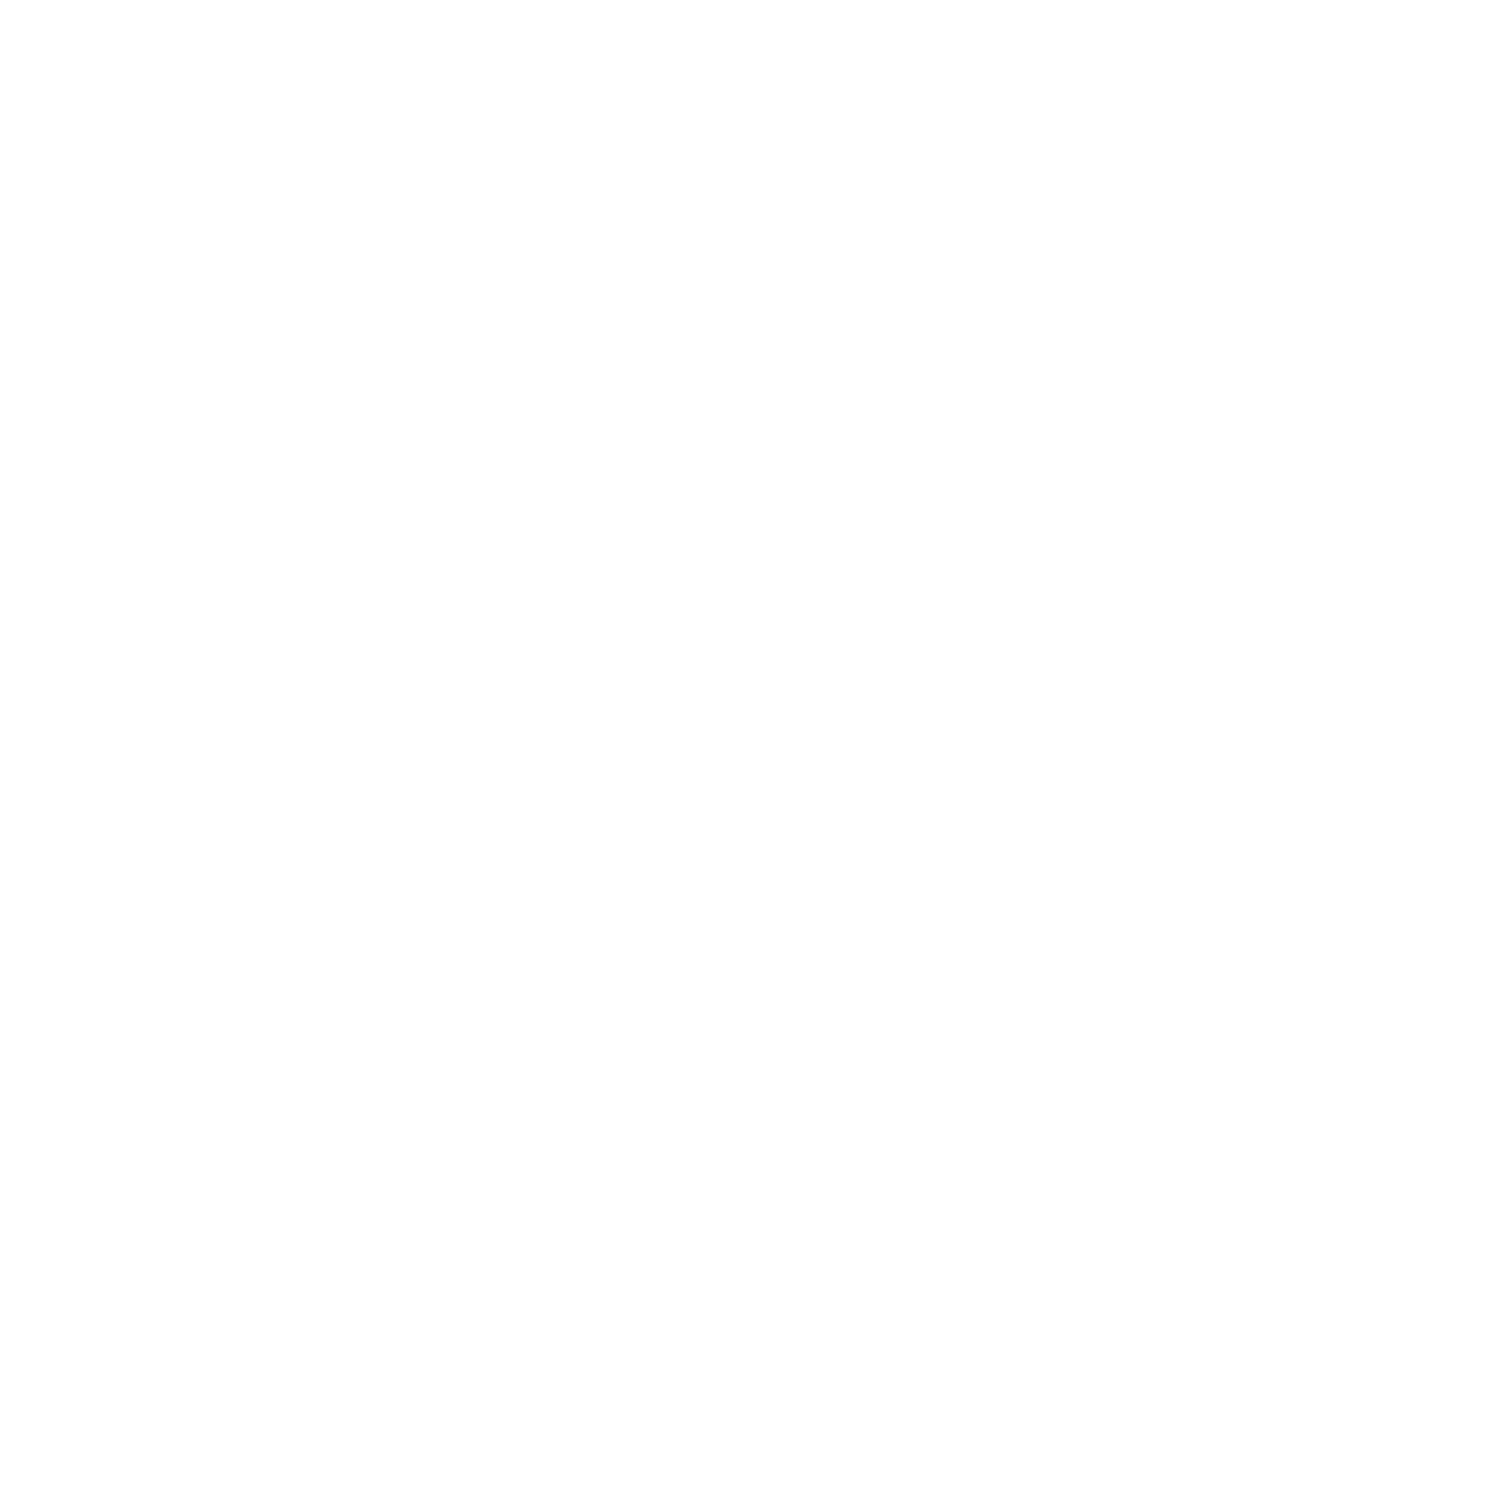 Rumble At Oak ridge